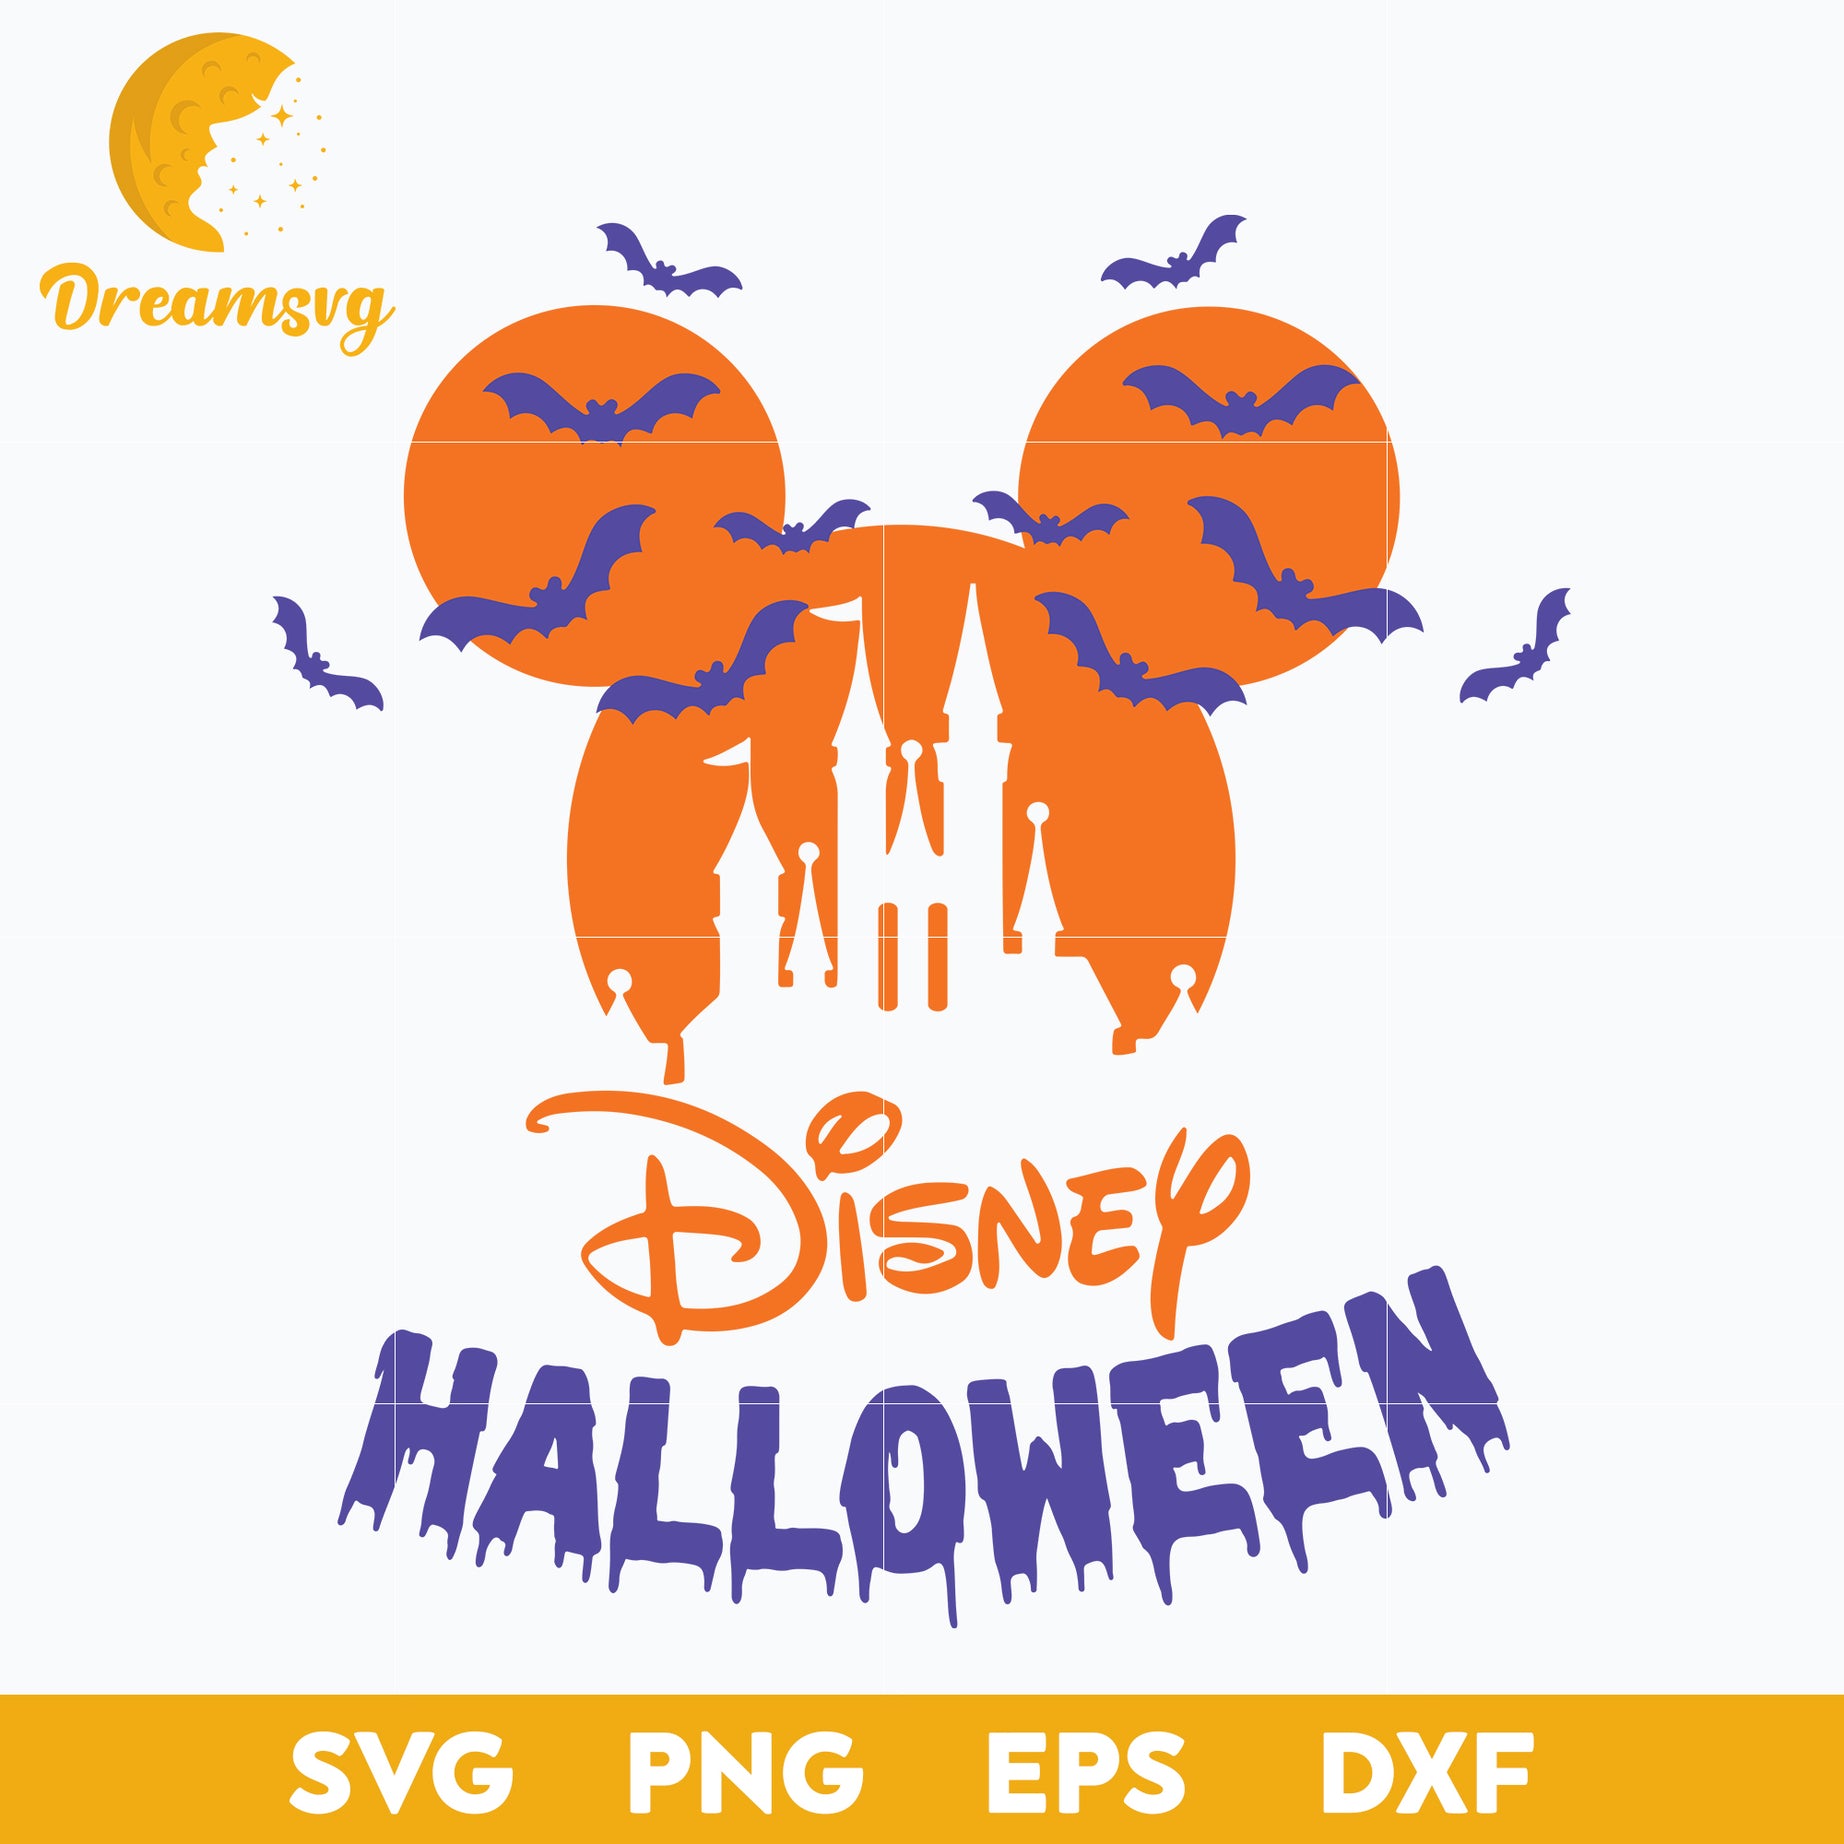 Disney Halloween Svg, Mickey Halloween Svg, Mickey Svg, Halloween Svg, png, dxf, eps digital file.